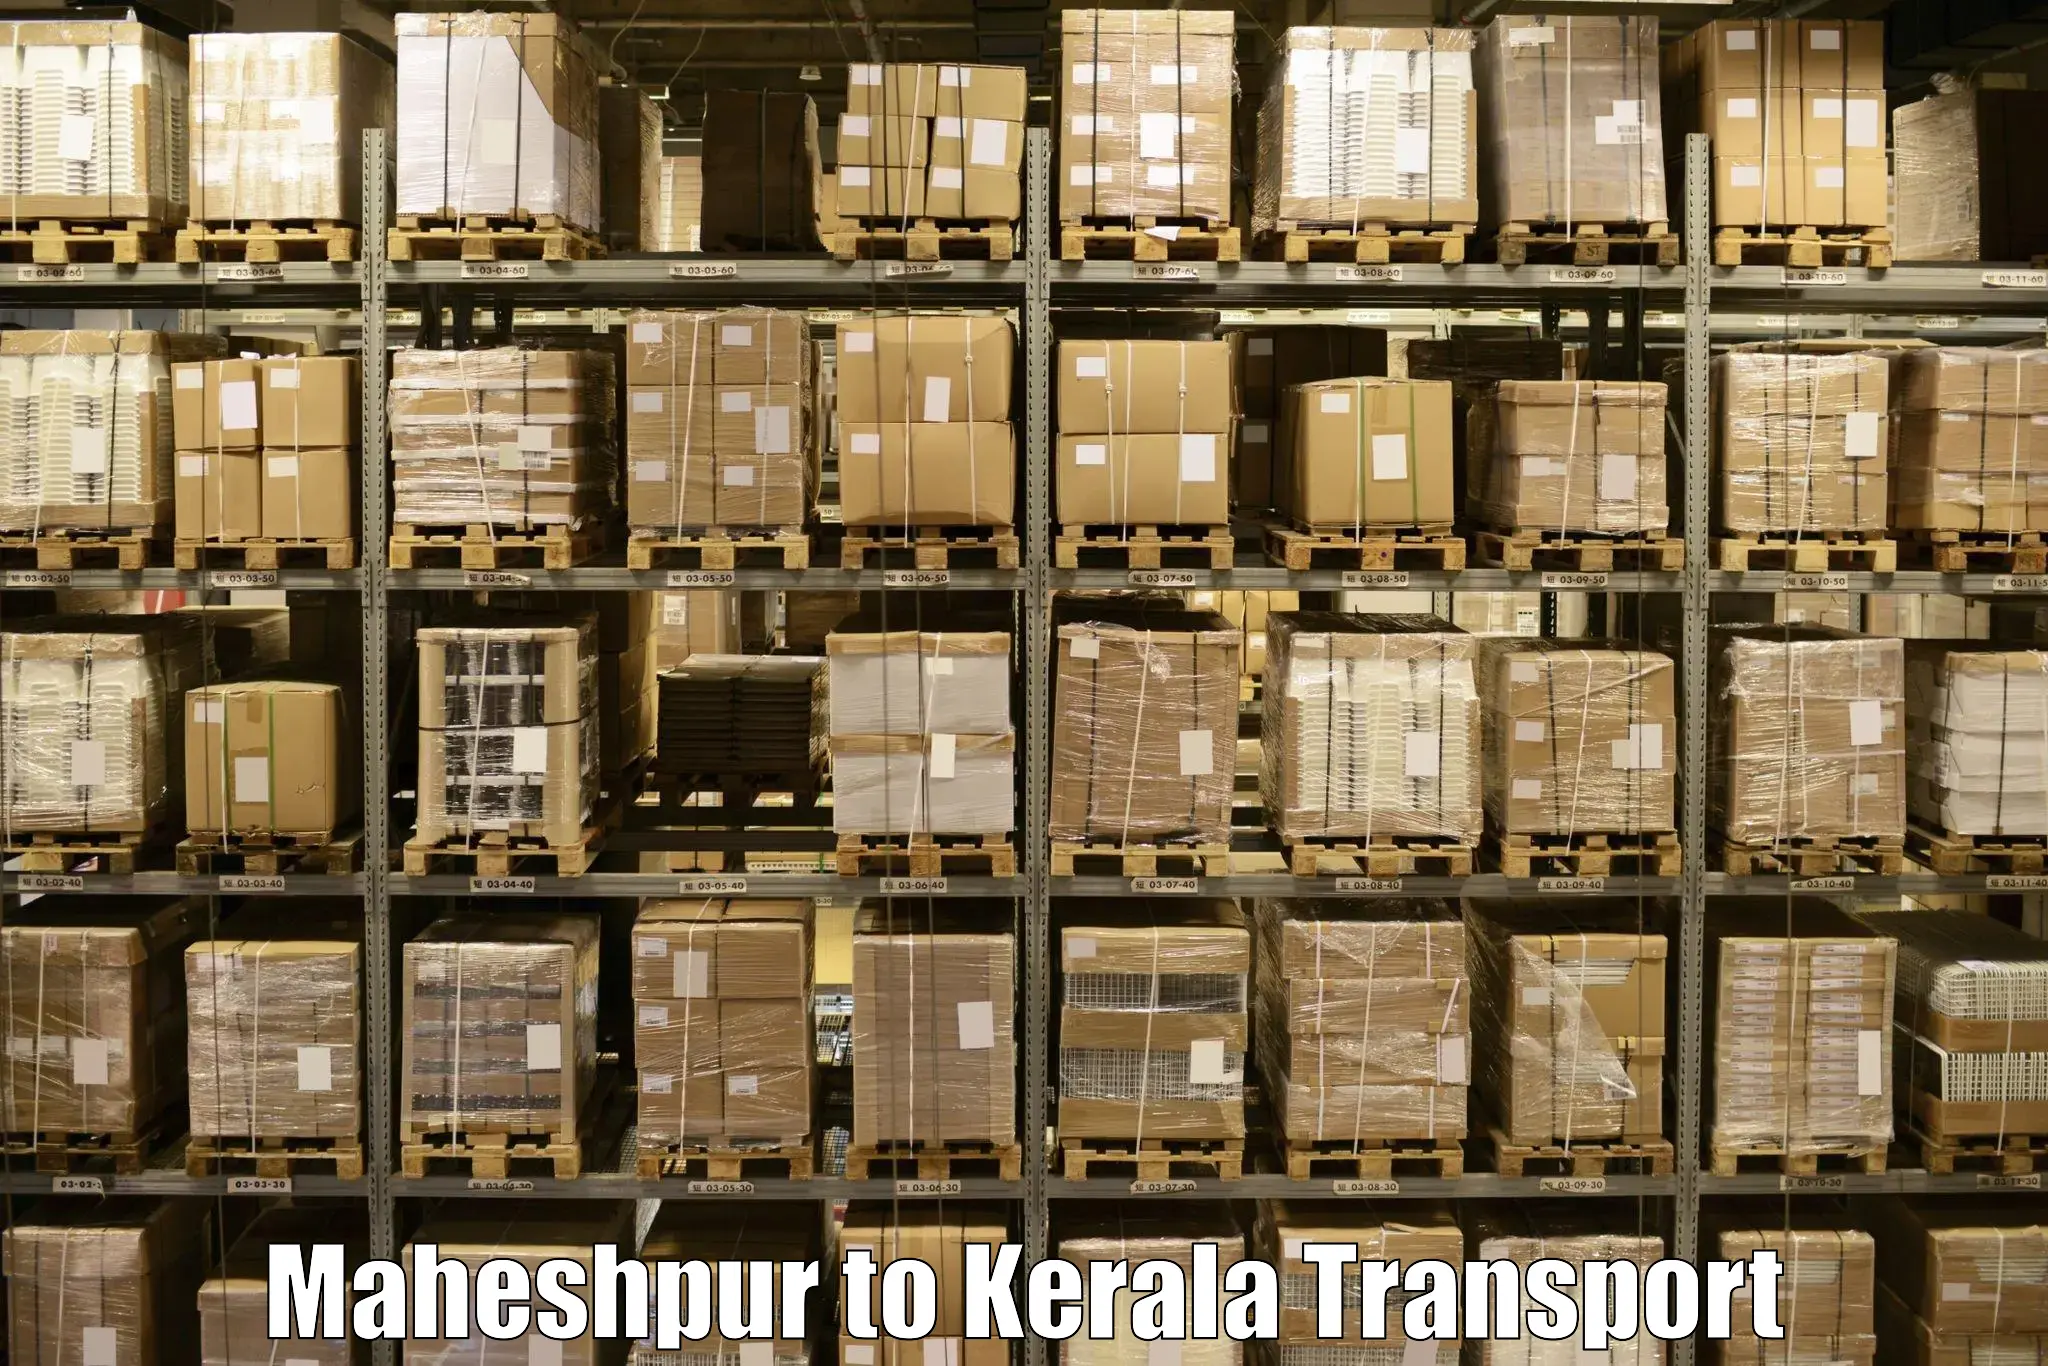 Daily transport service Maheshpur to Chungatra